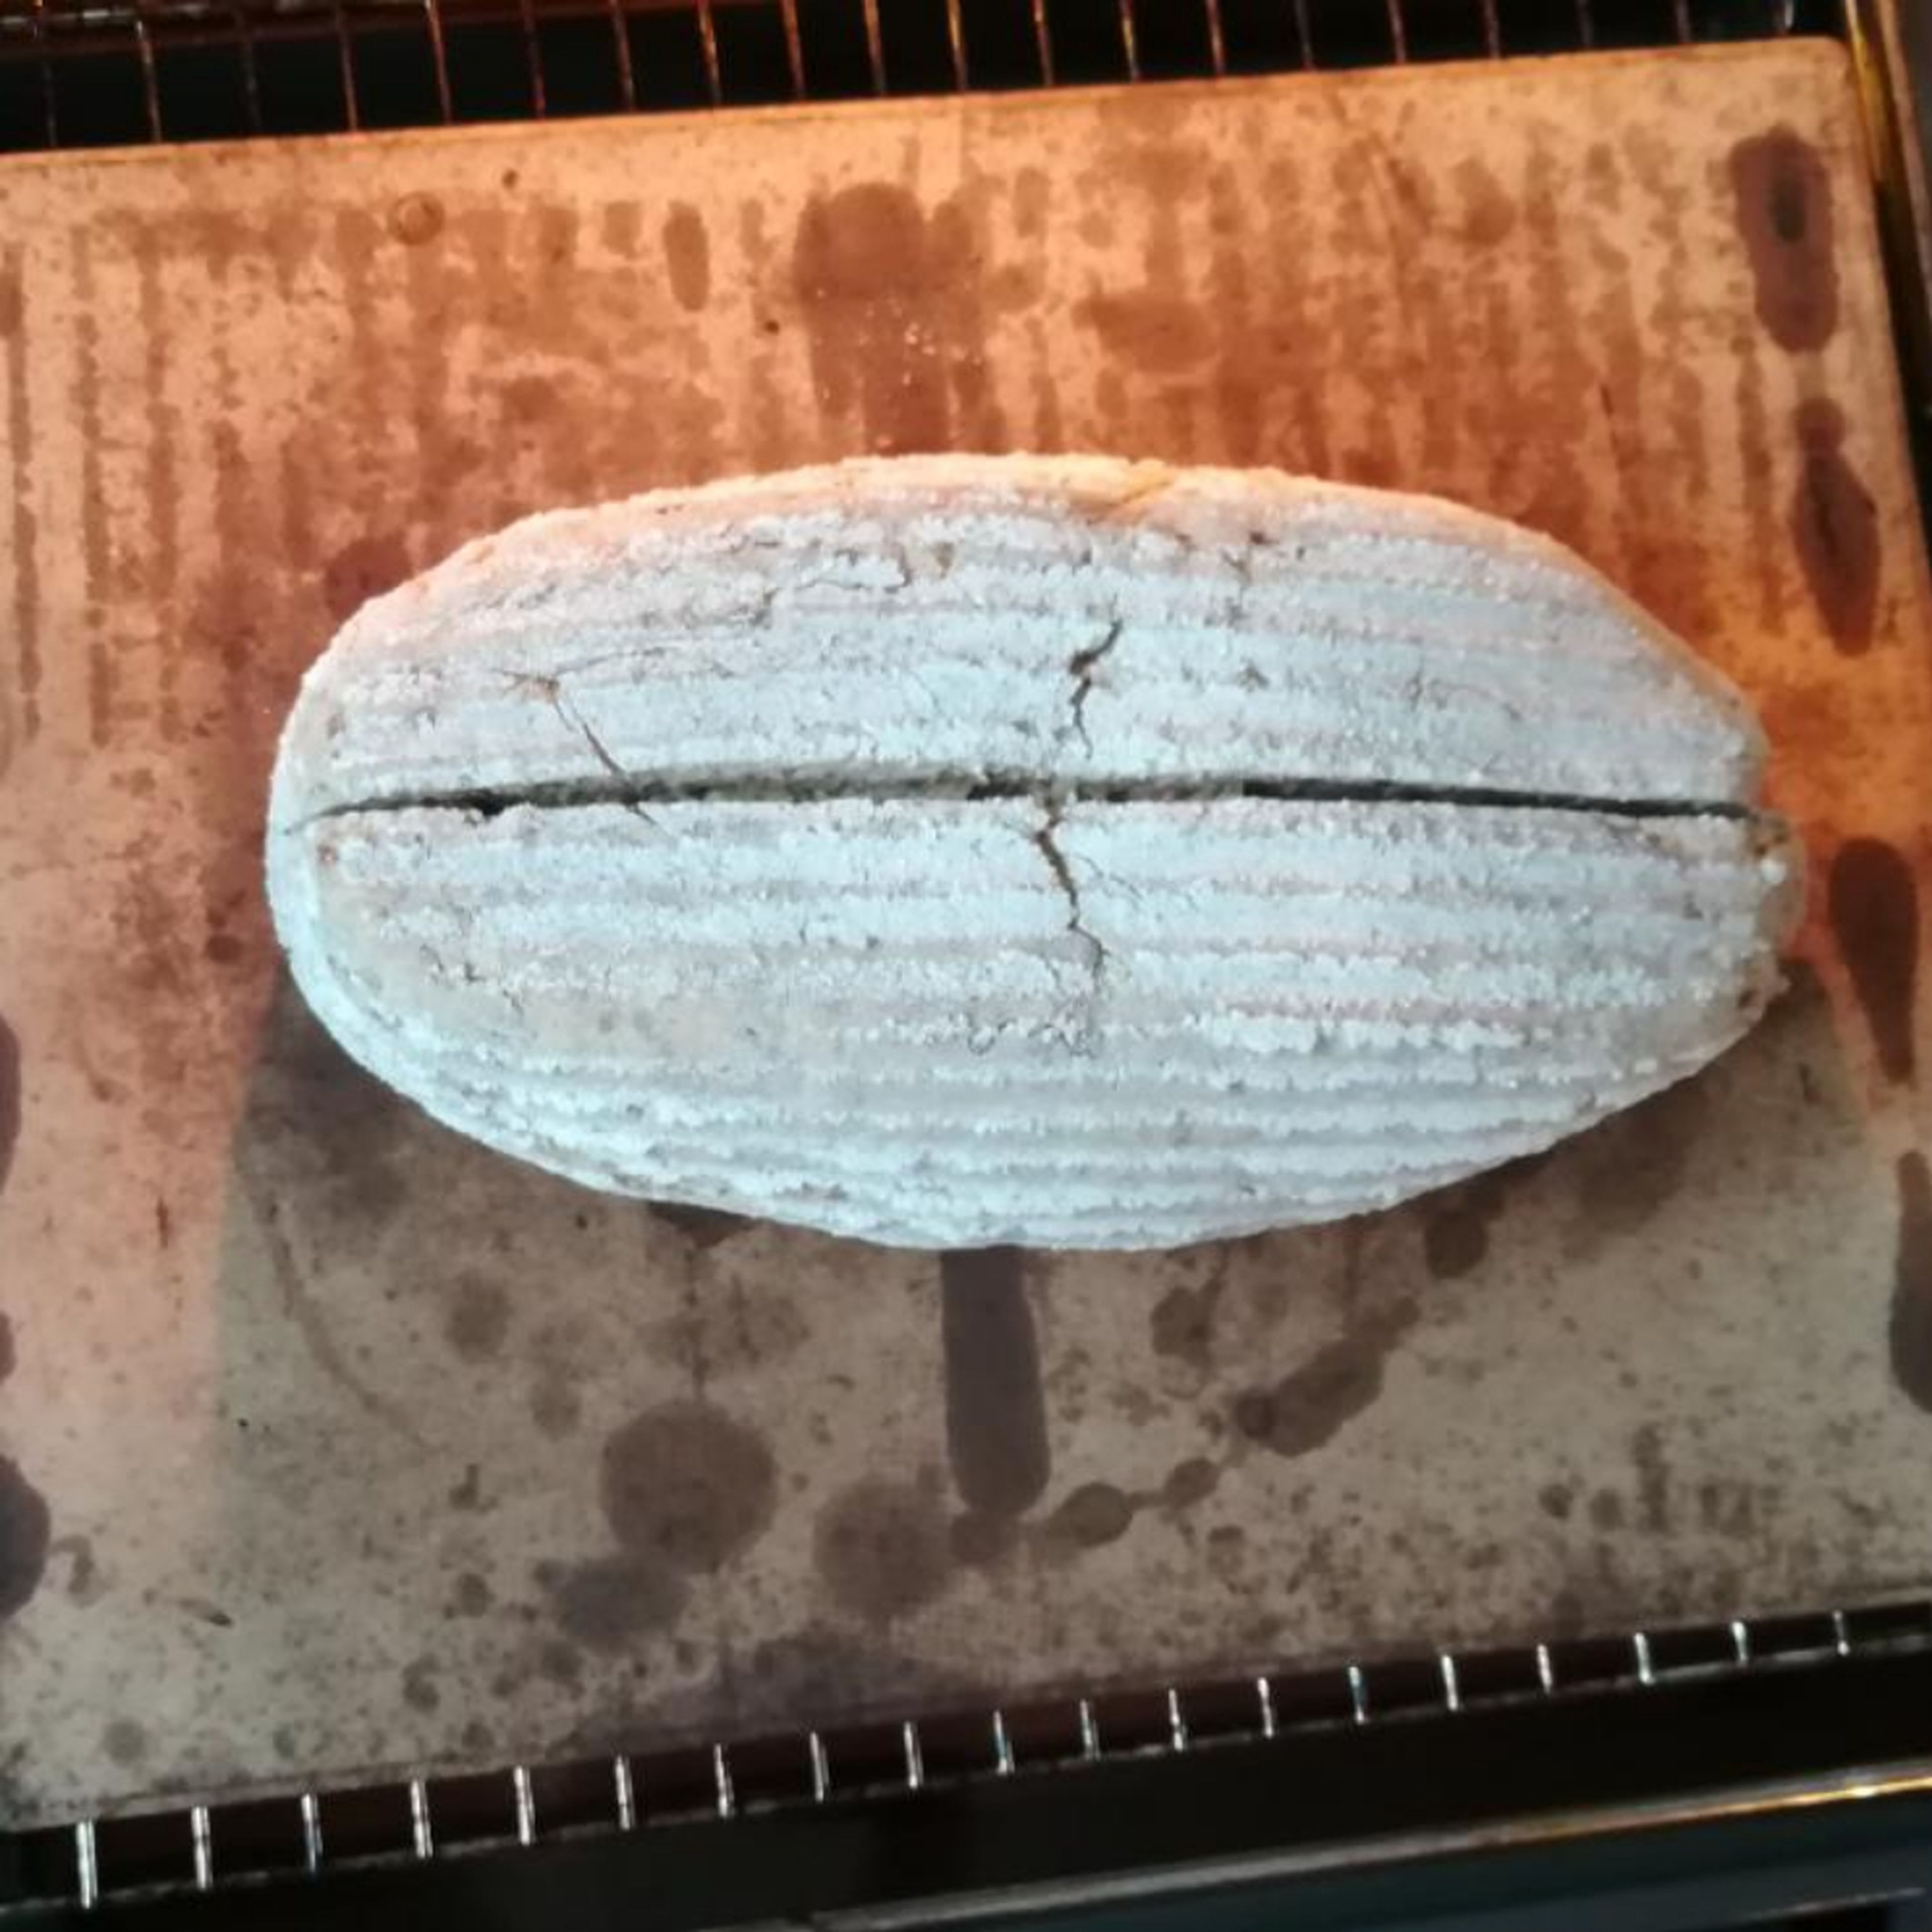 Das Brot vorsichtig auf den heißen Pizzastein (mein Stein ist schon ein älteres Model und oft in Gebrauch) stürzen und mit einem scharfen Messer einschneiden. Auf unterer Schiene erst 10 Minuten bei 250 °C vorbacken, dann 50 Minuten bei 180 °C ausbacken.